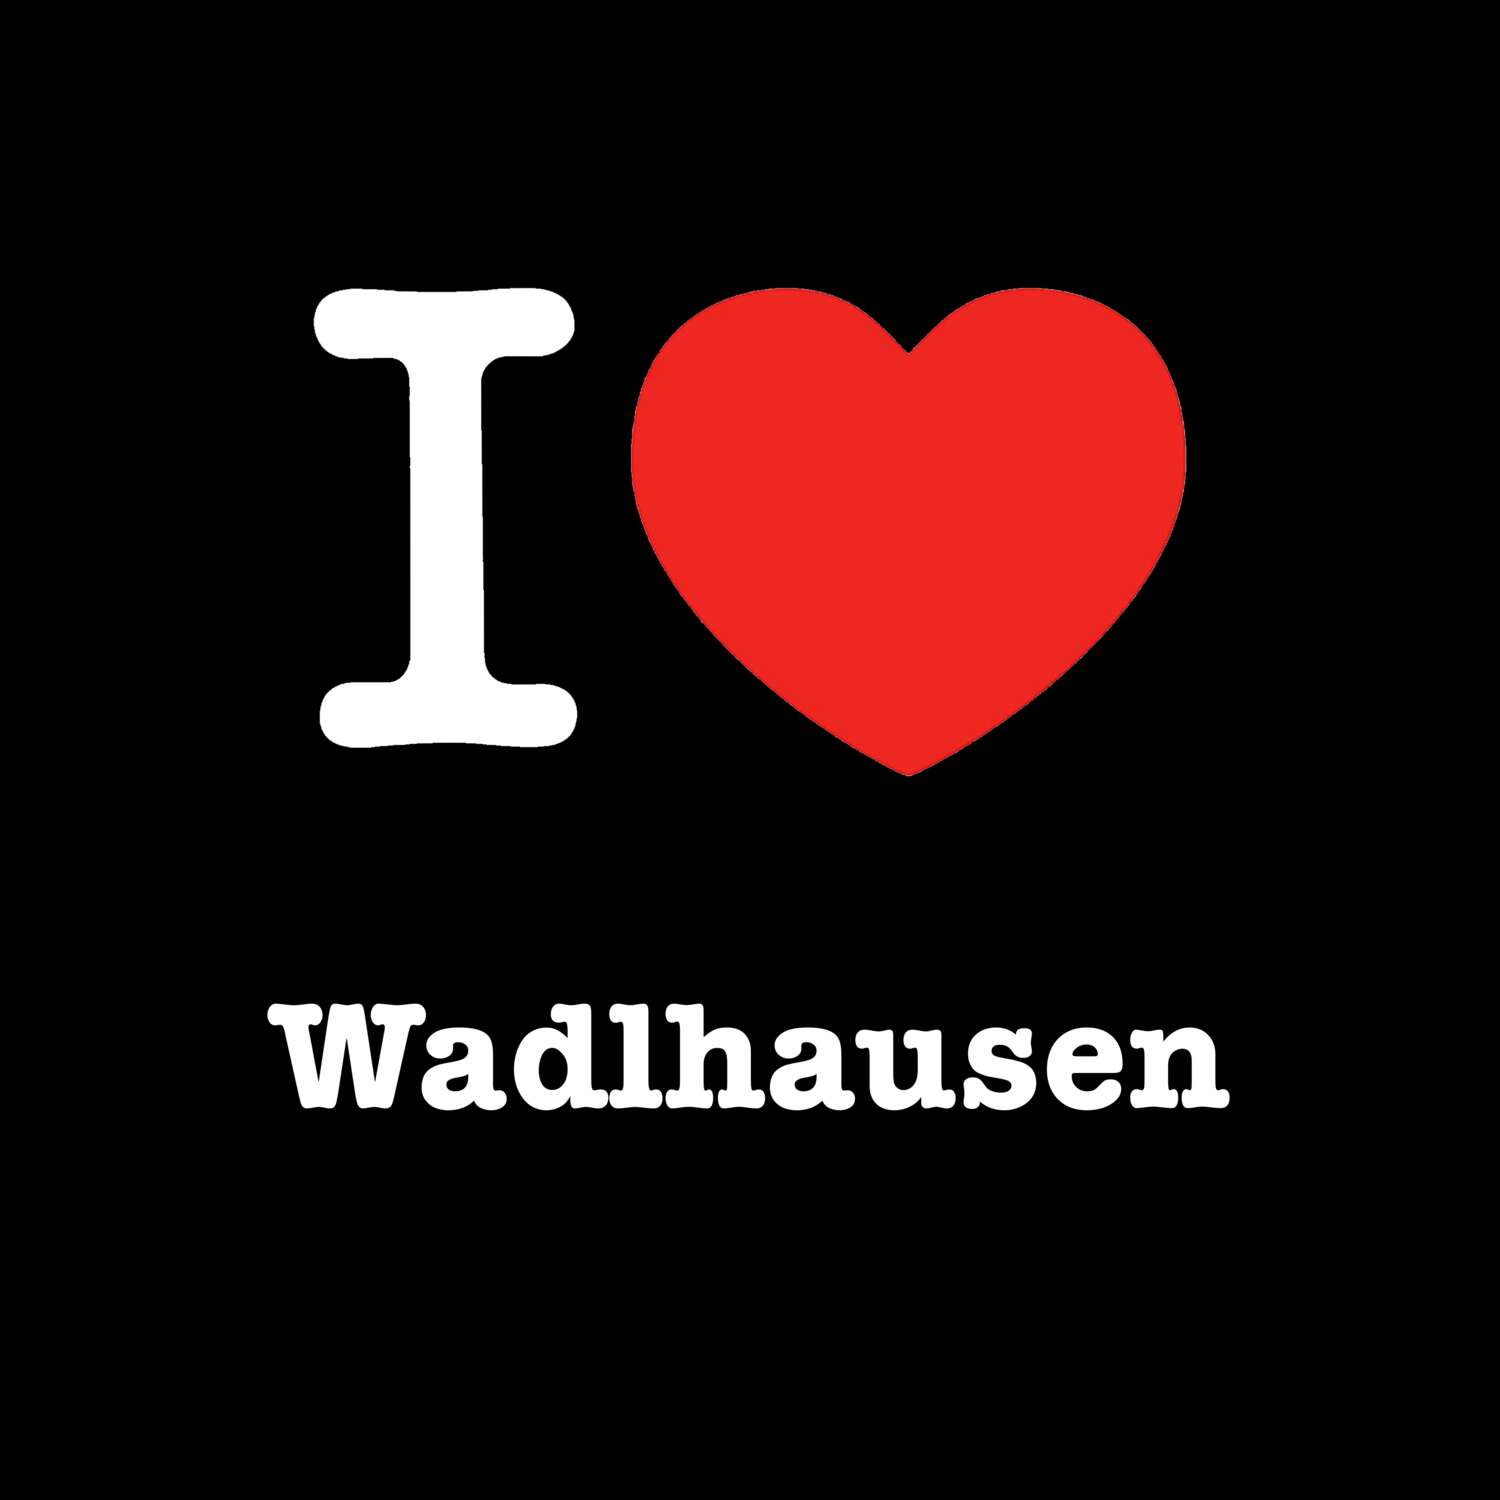 Wadlhausen T-Shirt »I love«